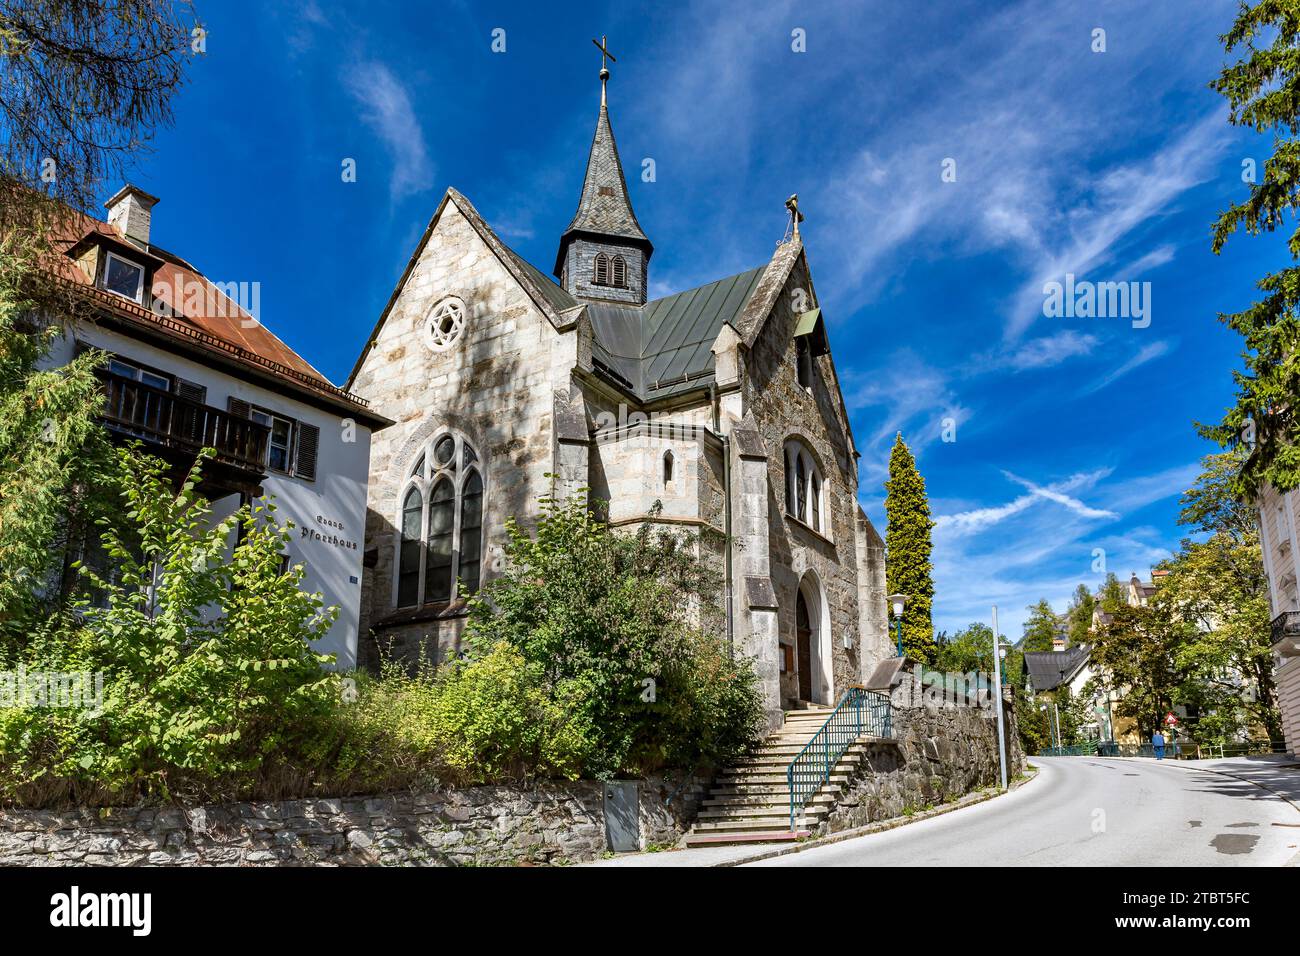 St. Christopher's Church, built in 1872, Bad Gastein, Gastein Valley, Hohe Tauern National Park, Austria, Europe Stock Photo